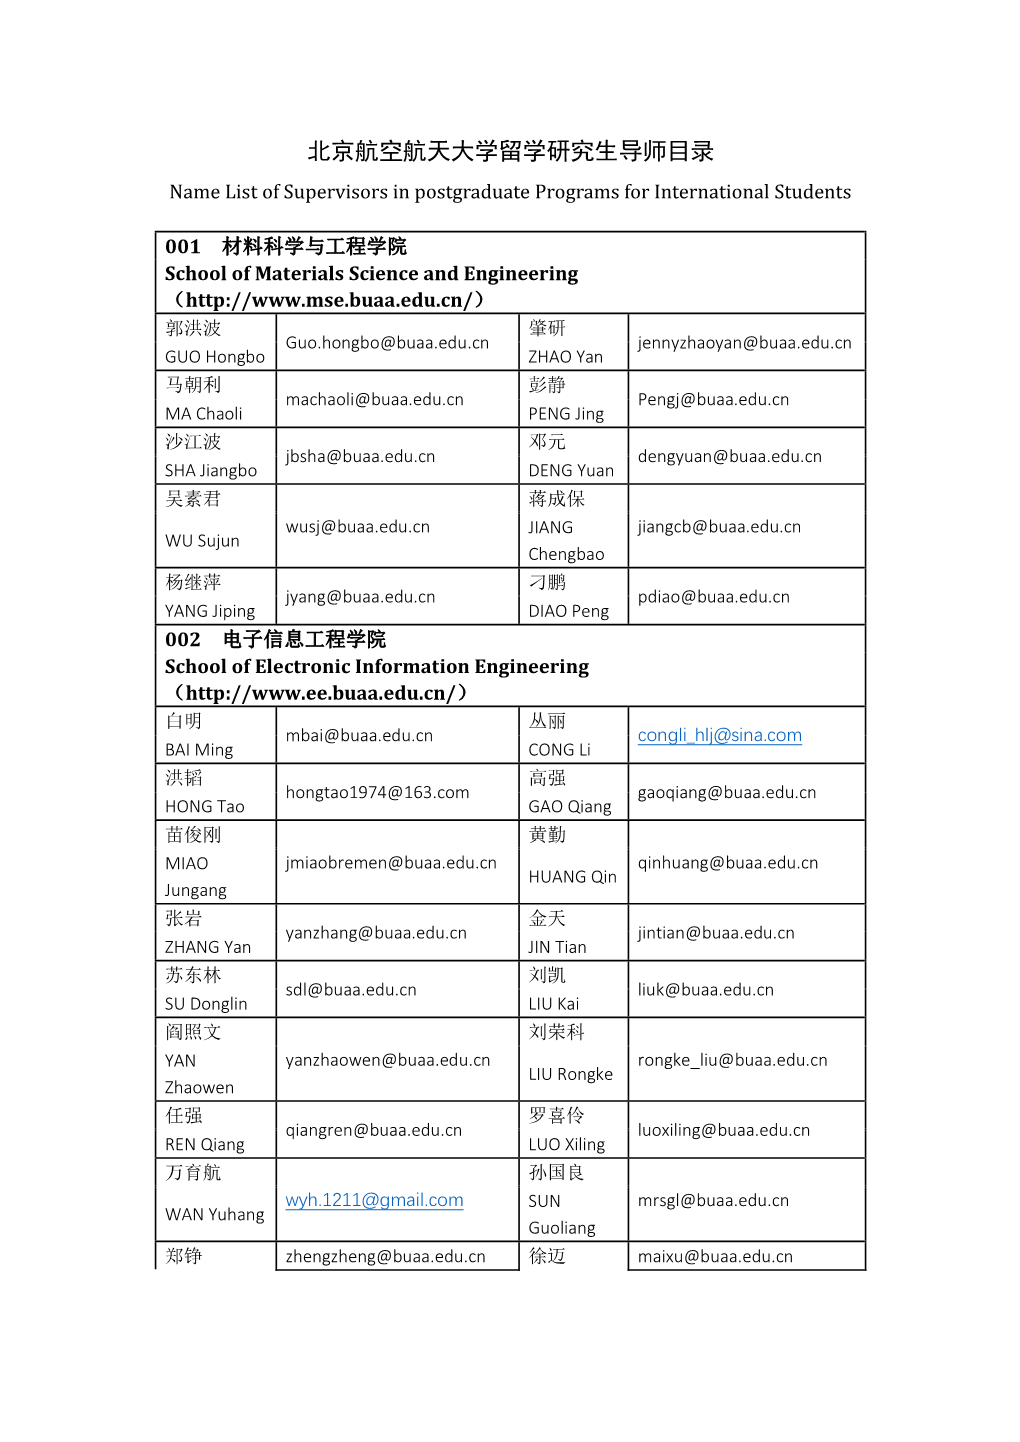 北京航空航天大学留学研究生导师目录 Name List of Supervisors in Postgraduate Programs for International Students